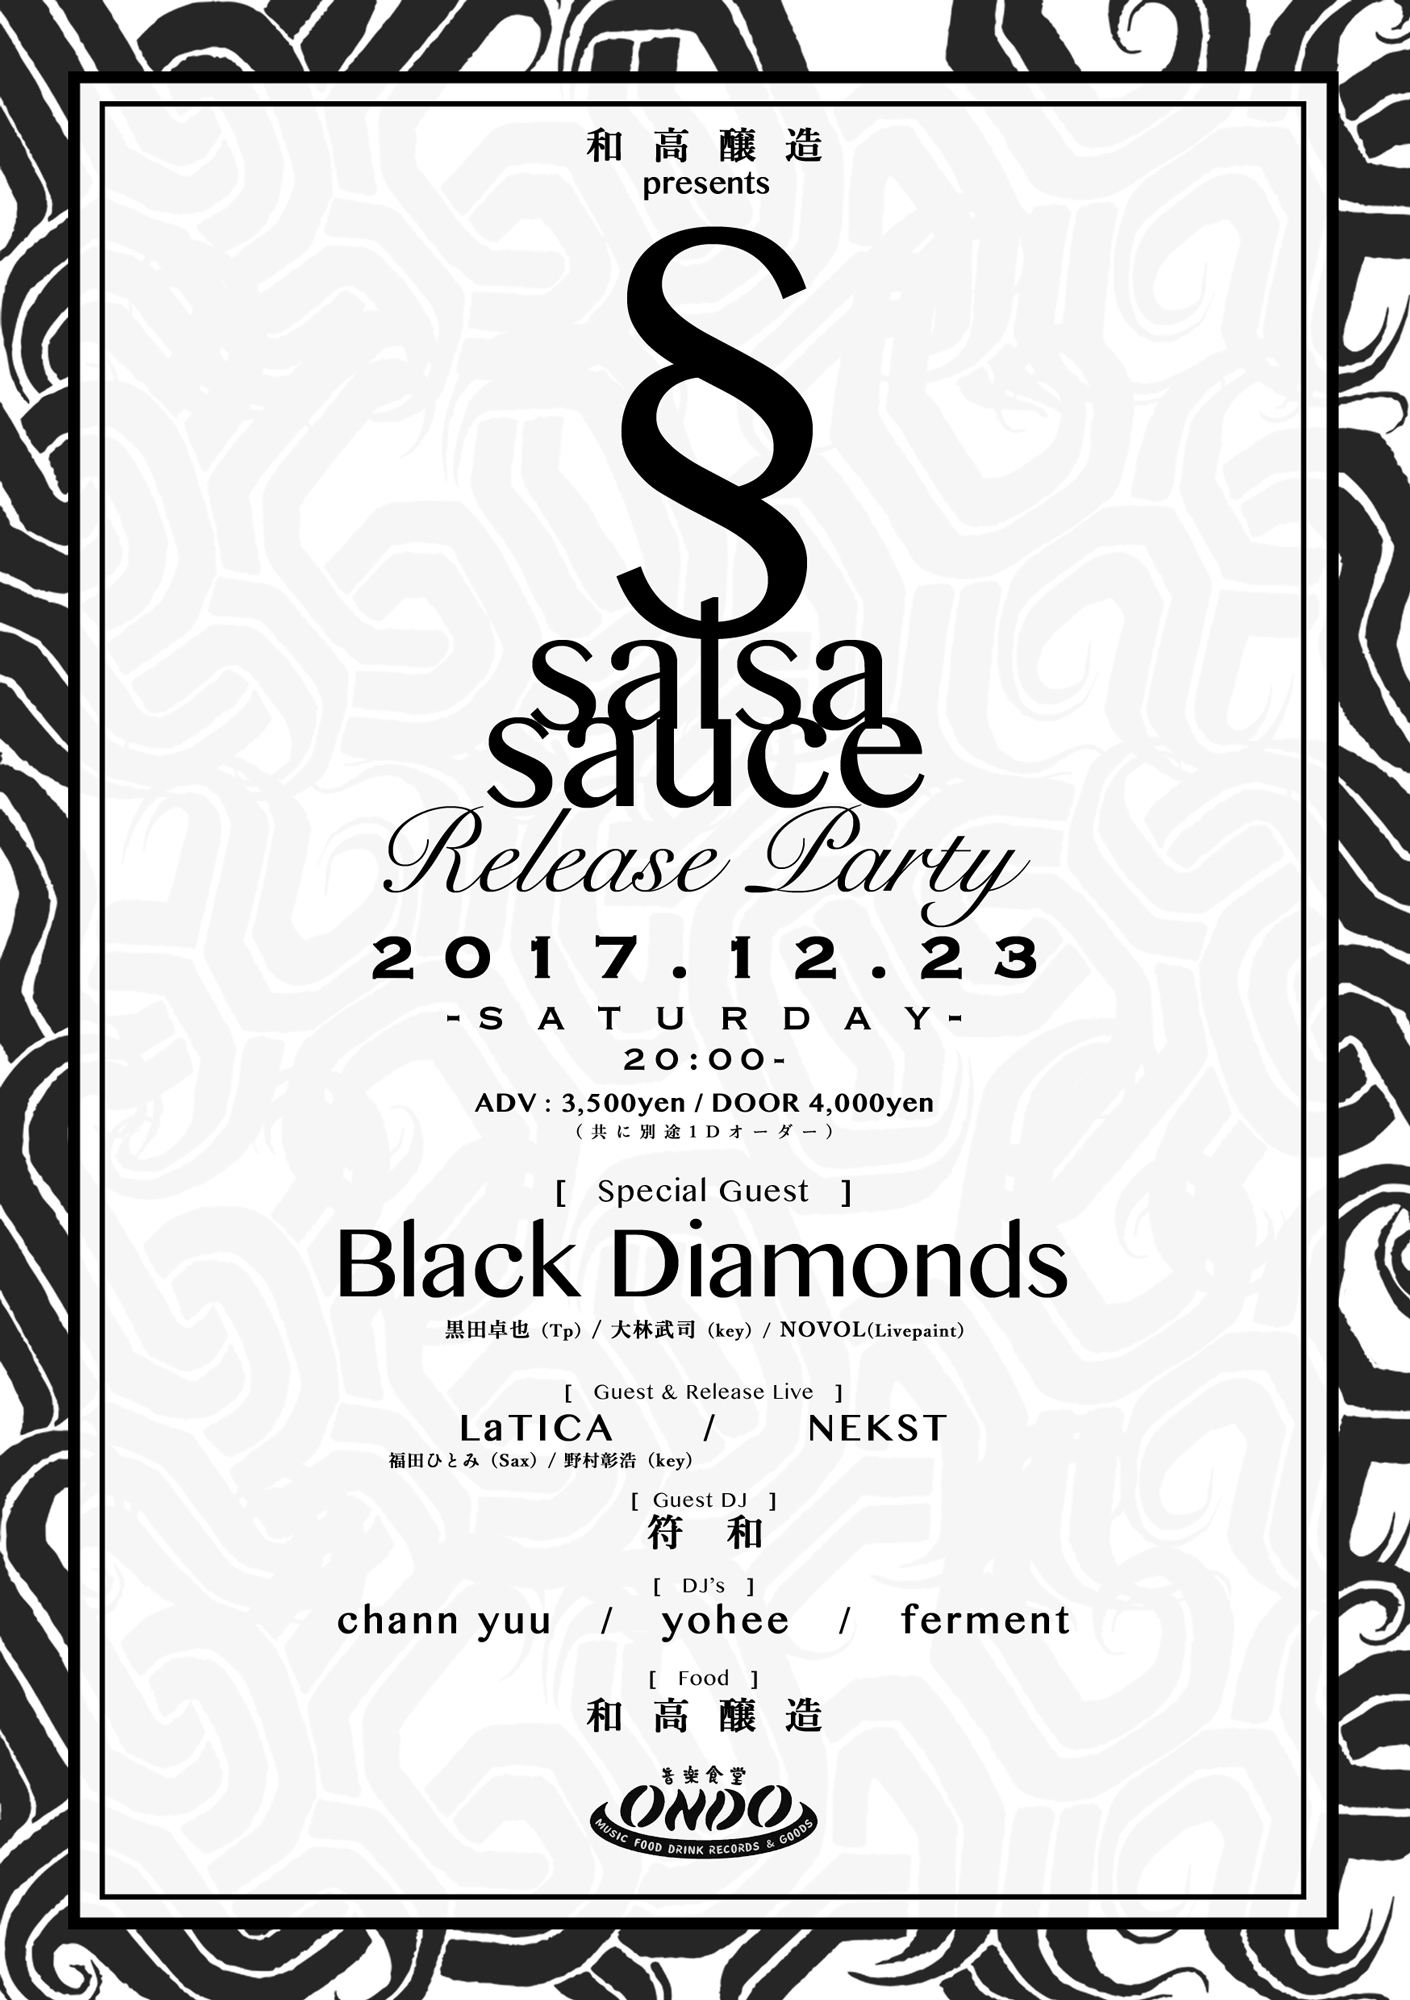 和高醸造 presents -Salsa Sauce Release Party-